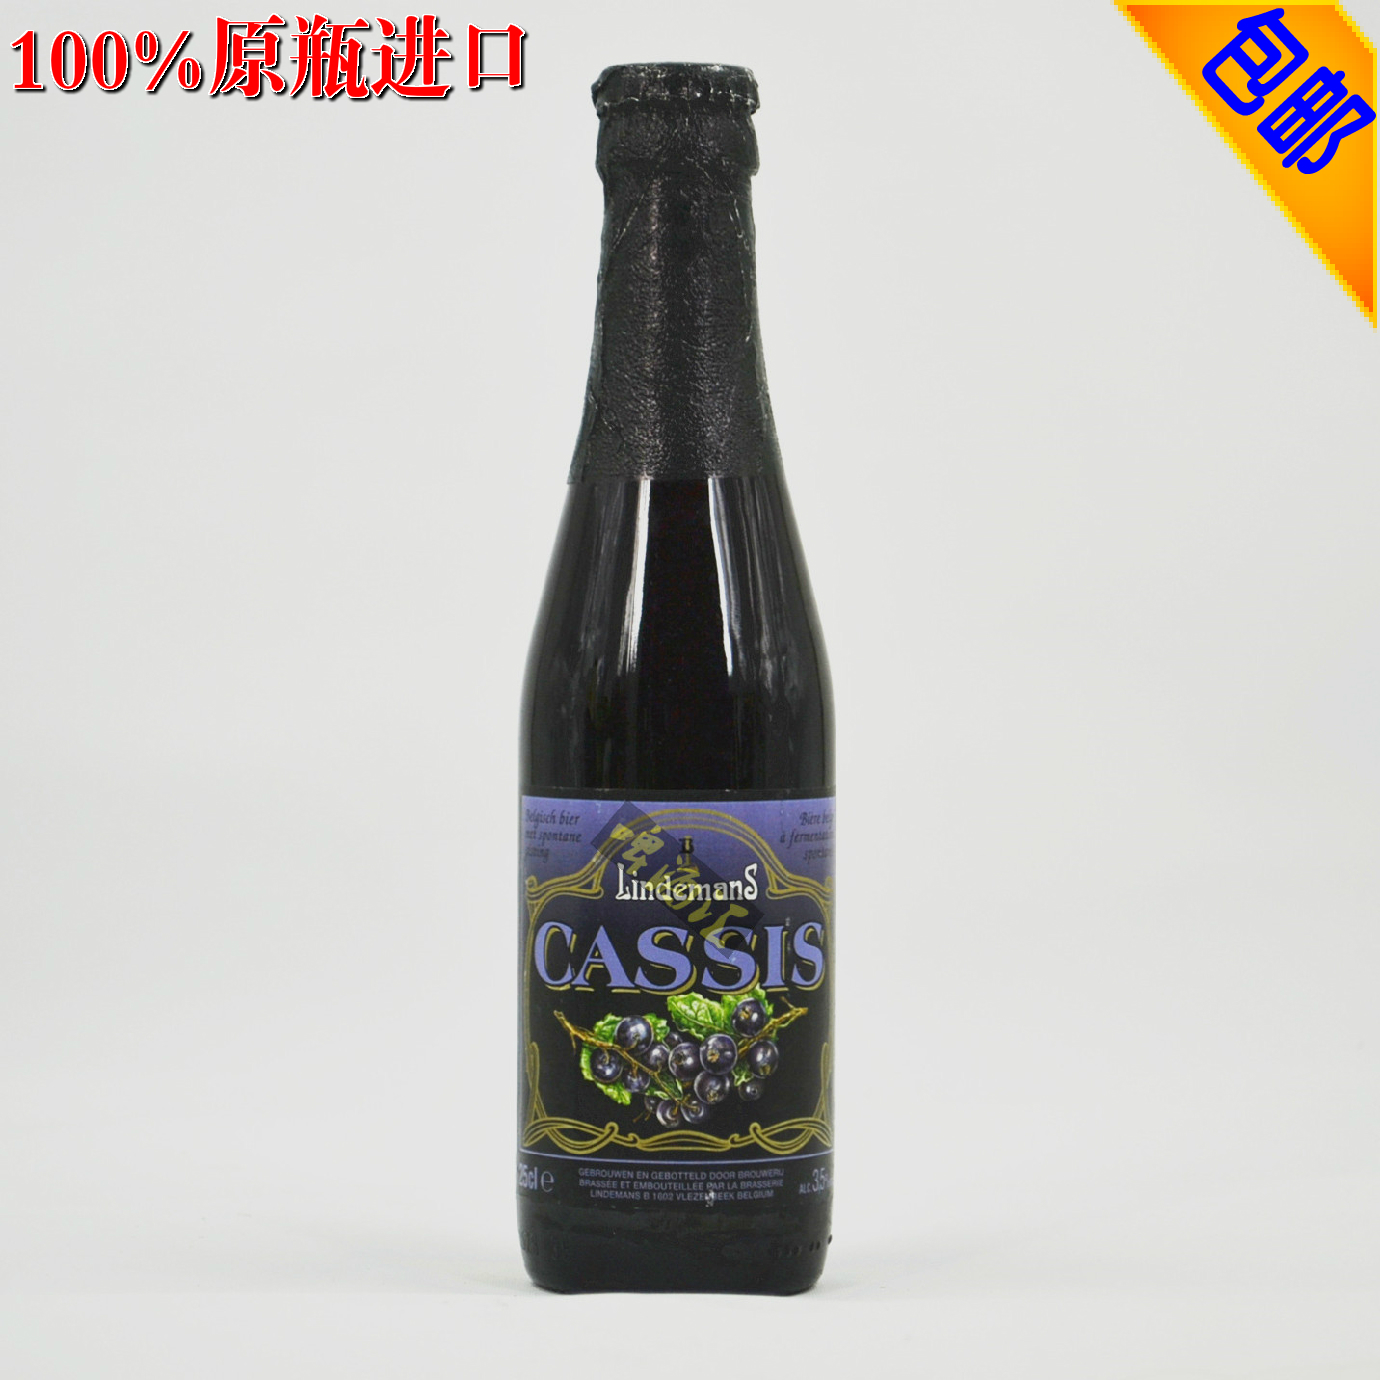 比利时进口啤酒 林德曼蓝莓水果兰比克啤酒 Lindemans Cassis 250